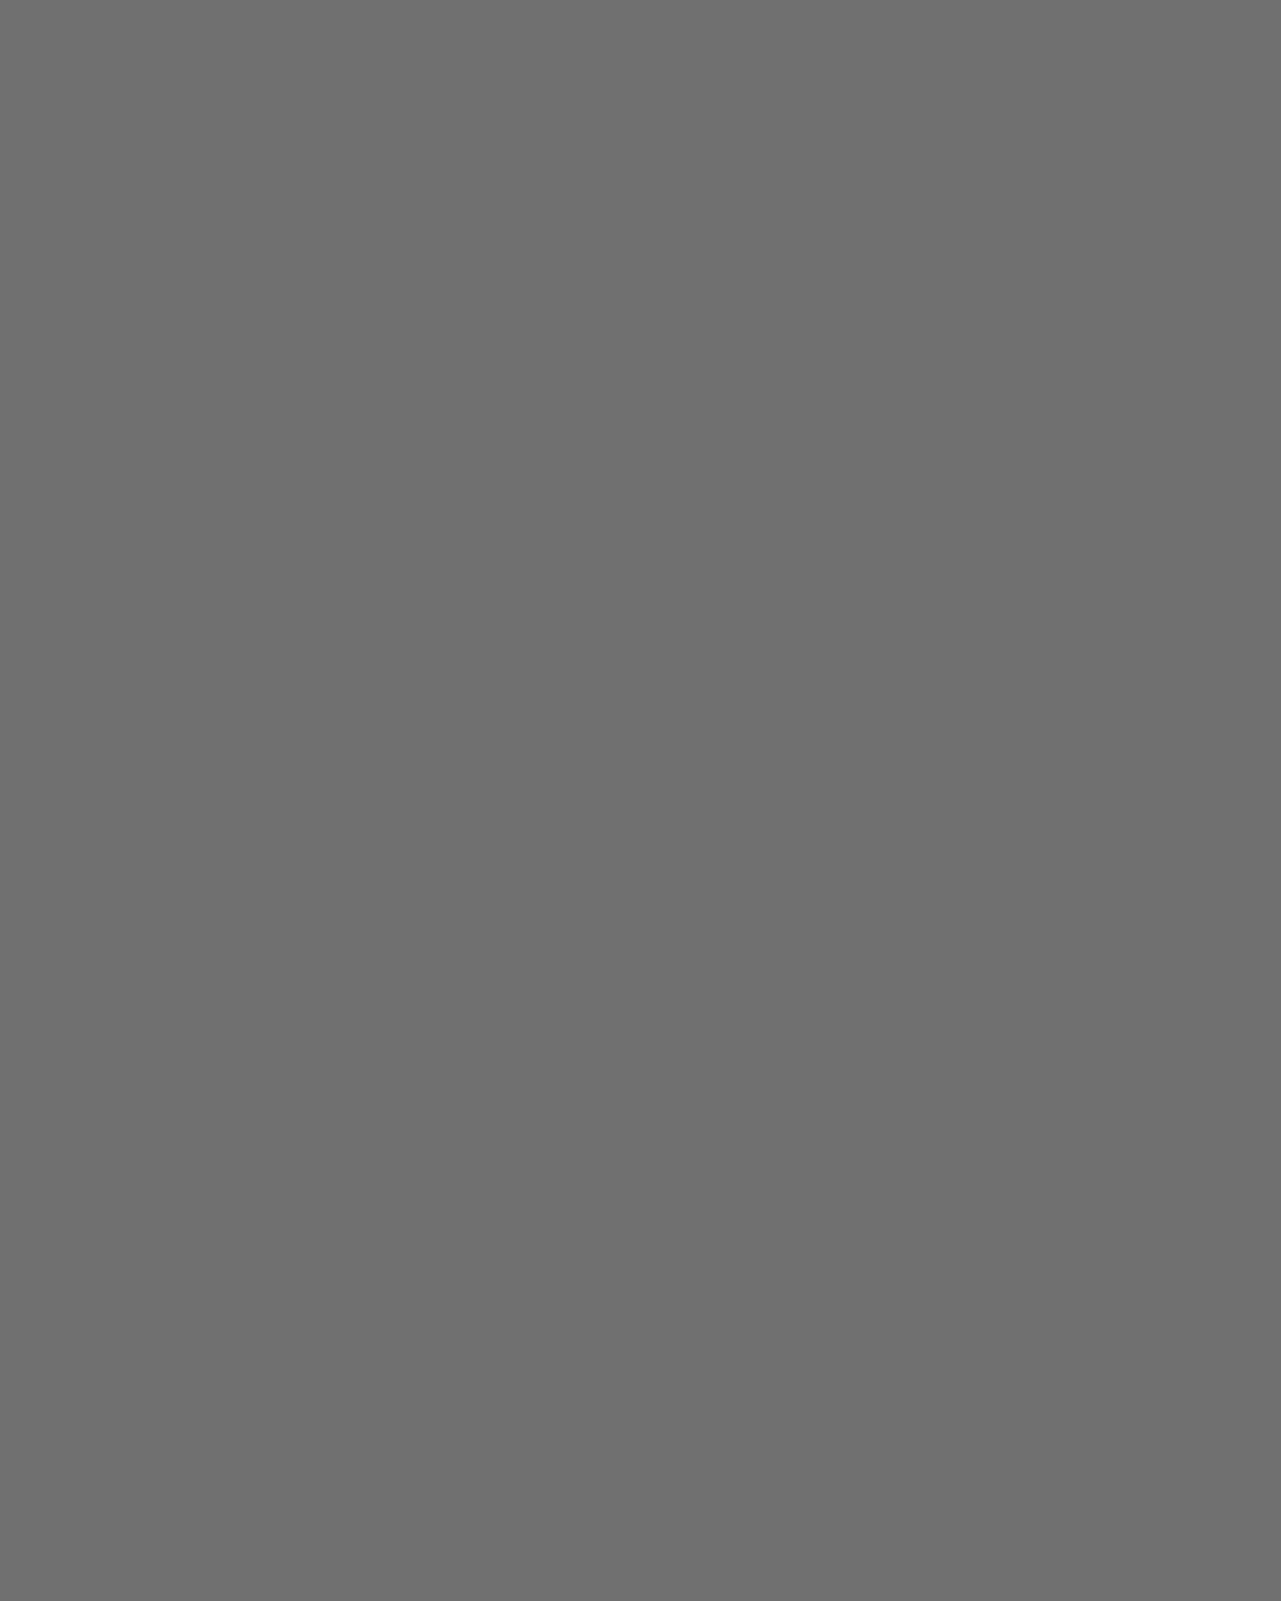 На пашне. Село Коломенское, Московская губерния, 1927 год. Фотография: Аркадий Шайхет / Мультимедиа Арт Музей, Москва